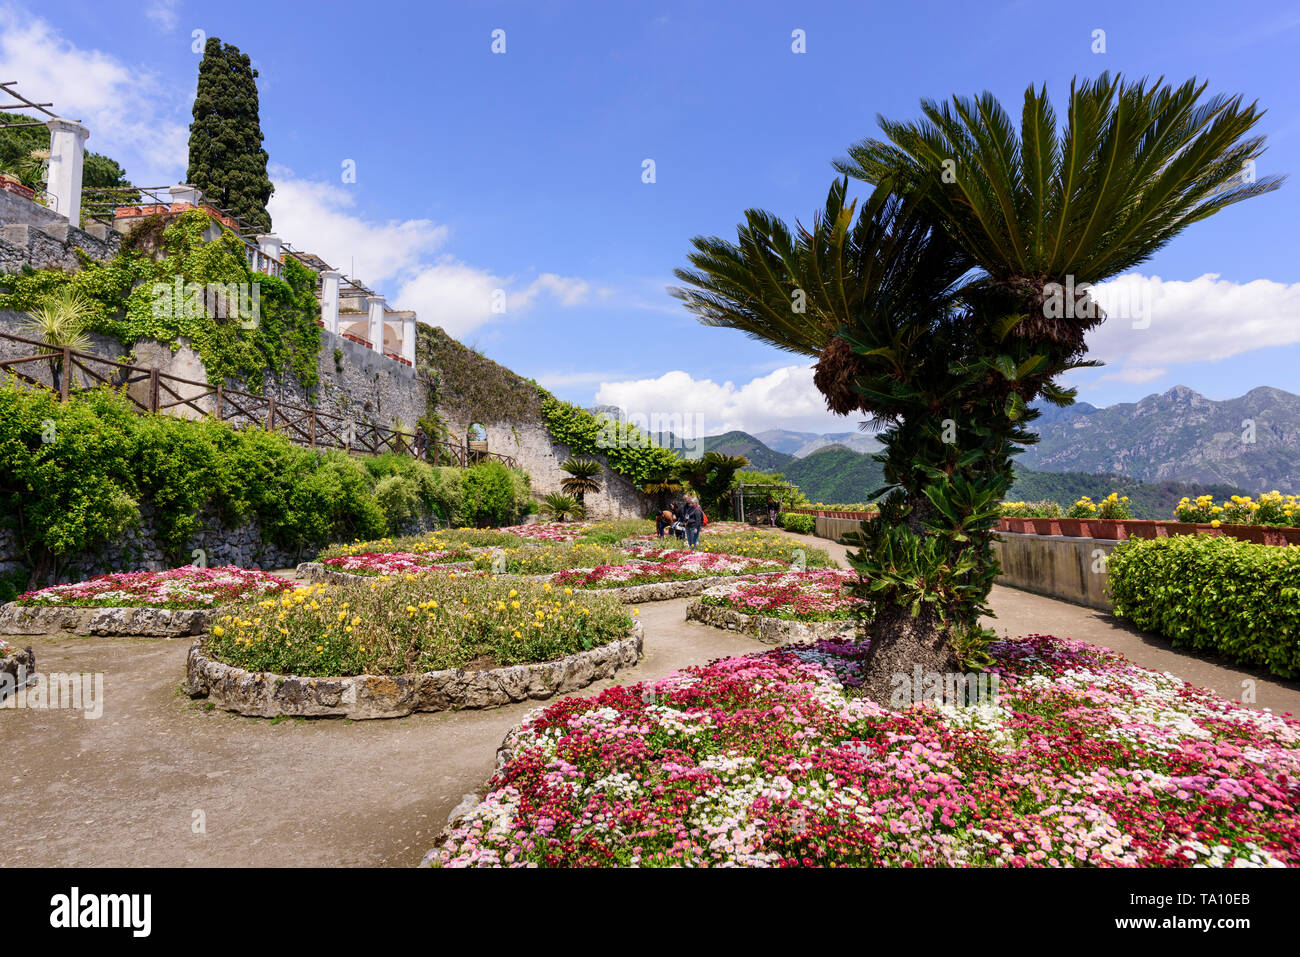 Villa Rufolo jardín formal en Ravello, en la provincia de Salerno, en el sur de Italia Foto de stock